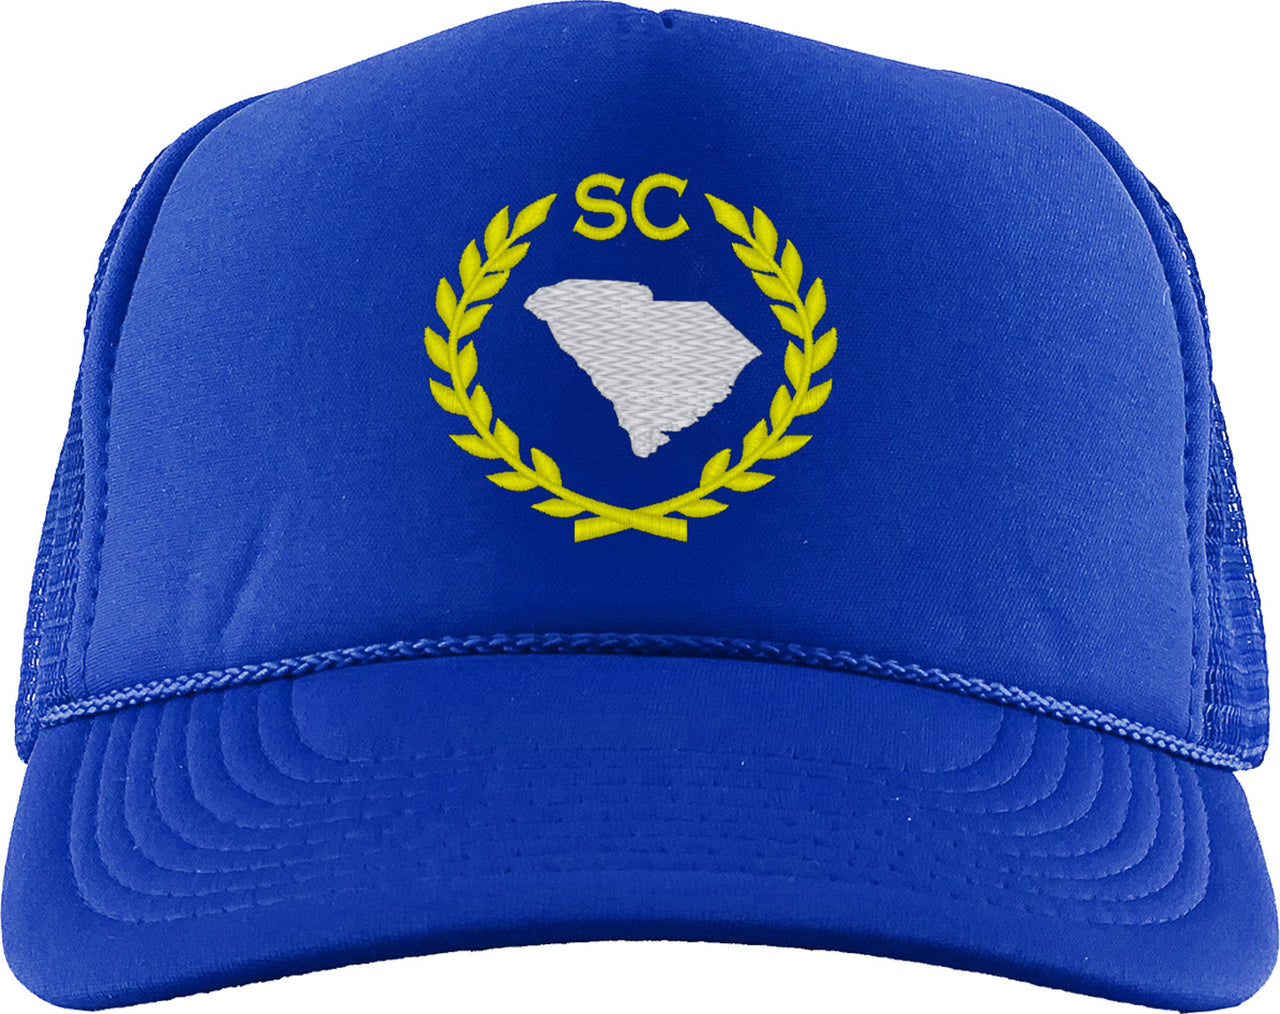 South Carolina State Foam Trucker Hat